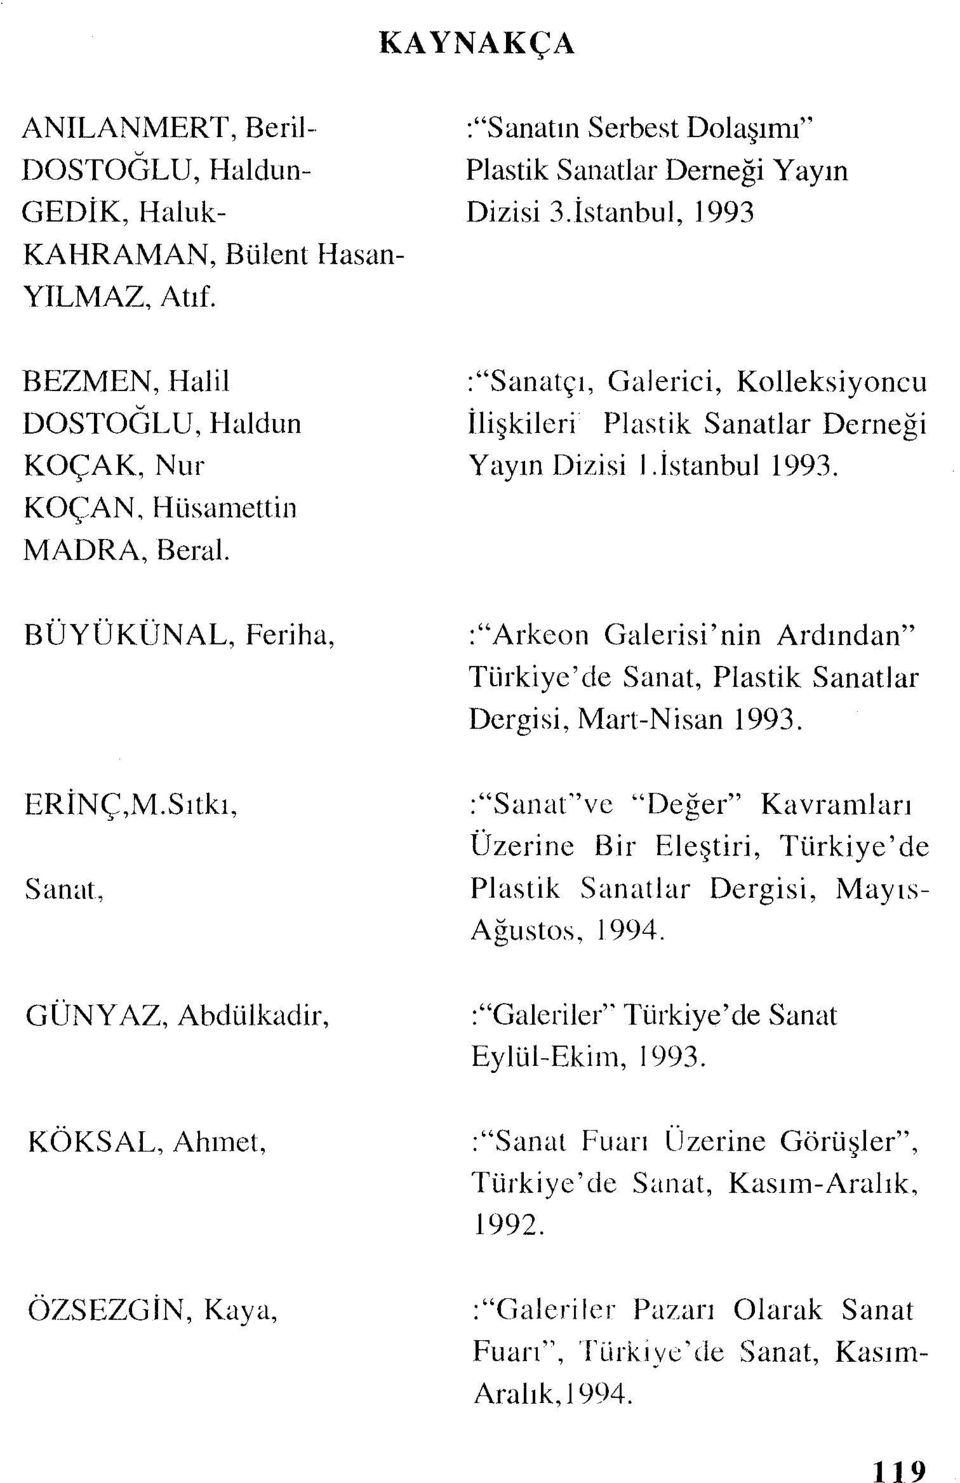 BÜYÜKÜNAL, Feriha, :"Arkeon Galerisi'nin Ardından" Türkiye'de Sanat, Plastik Sanatlar Dergisi, Mart-Nisan 1993. ERİNÇ,M.